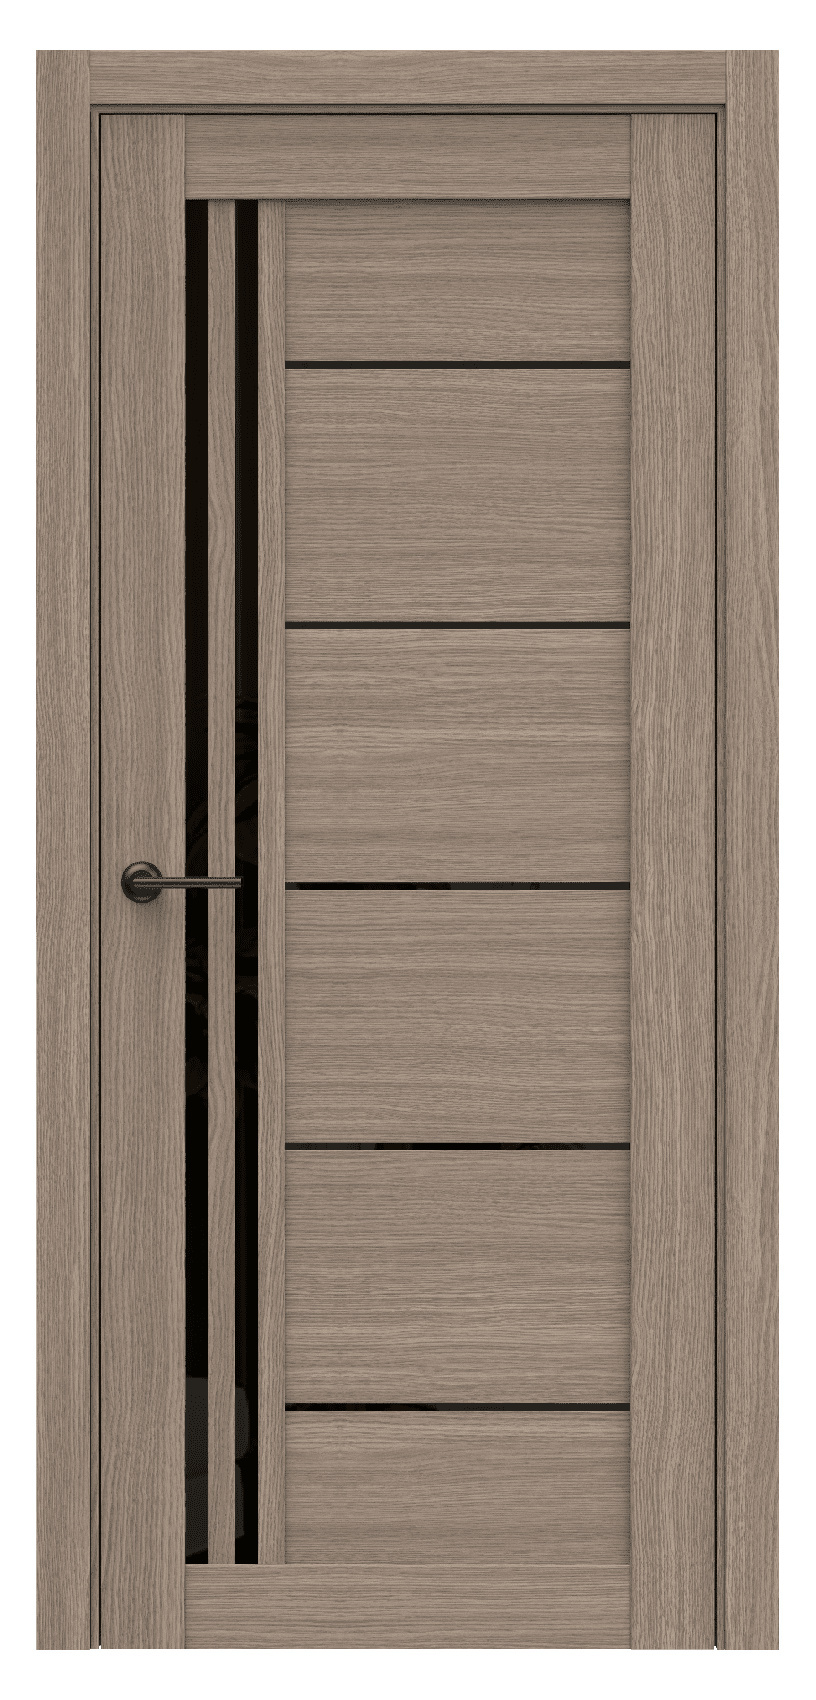 Questdoors Межкомнатная дверь Q62, арт. 17484 - фото №1